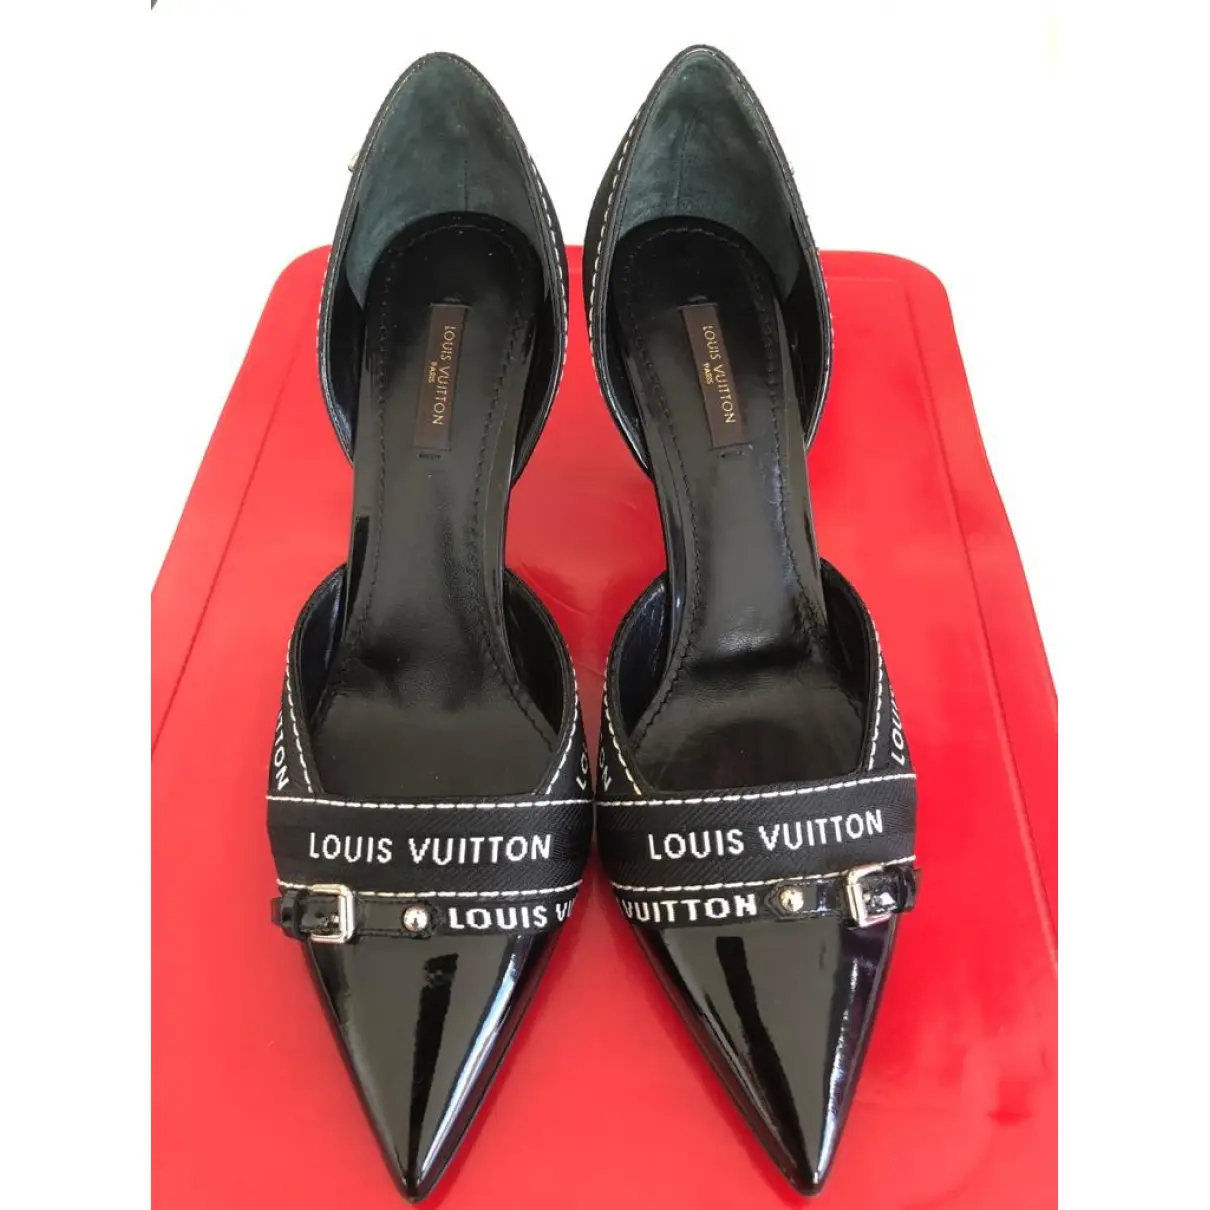 Buy Louis Vuitton Leather heels online